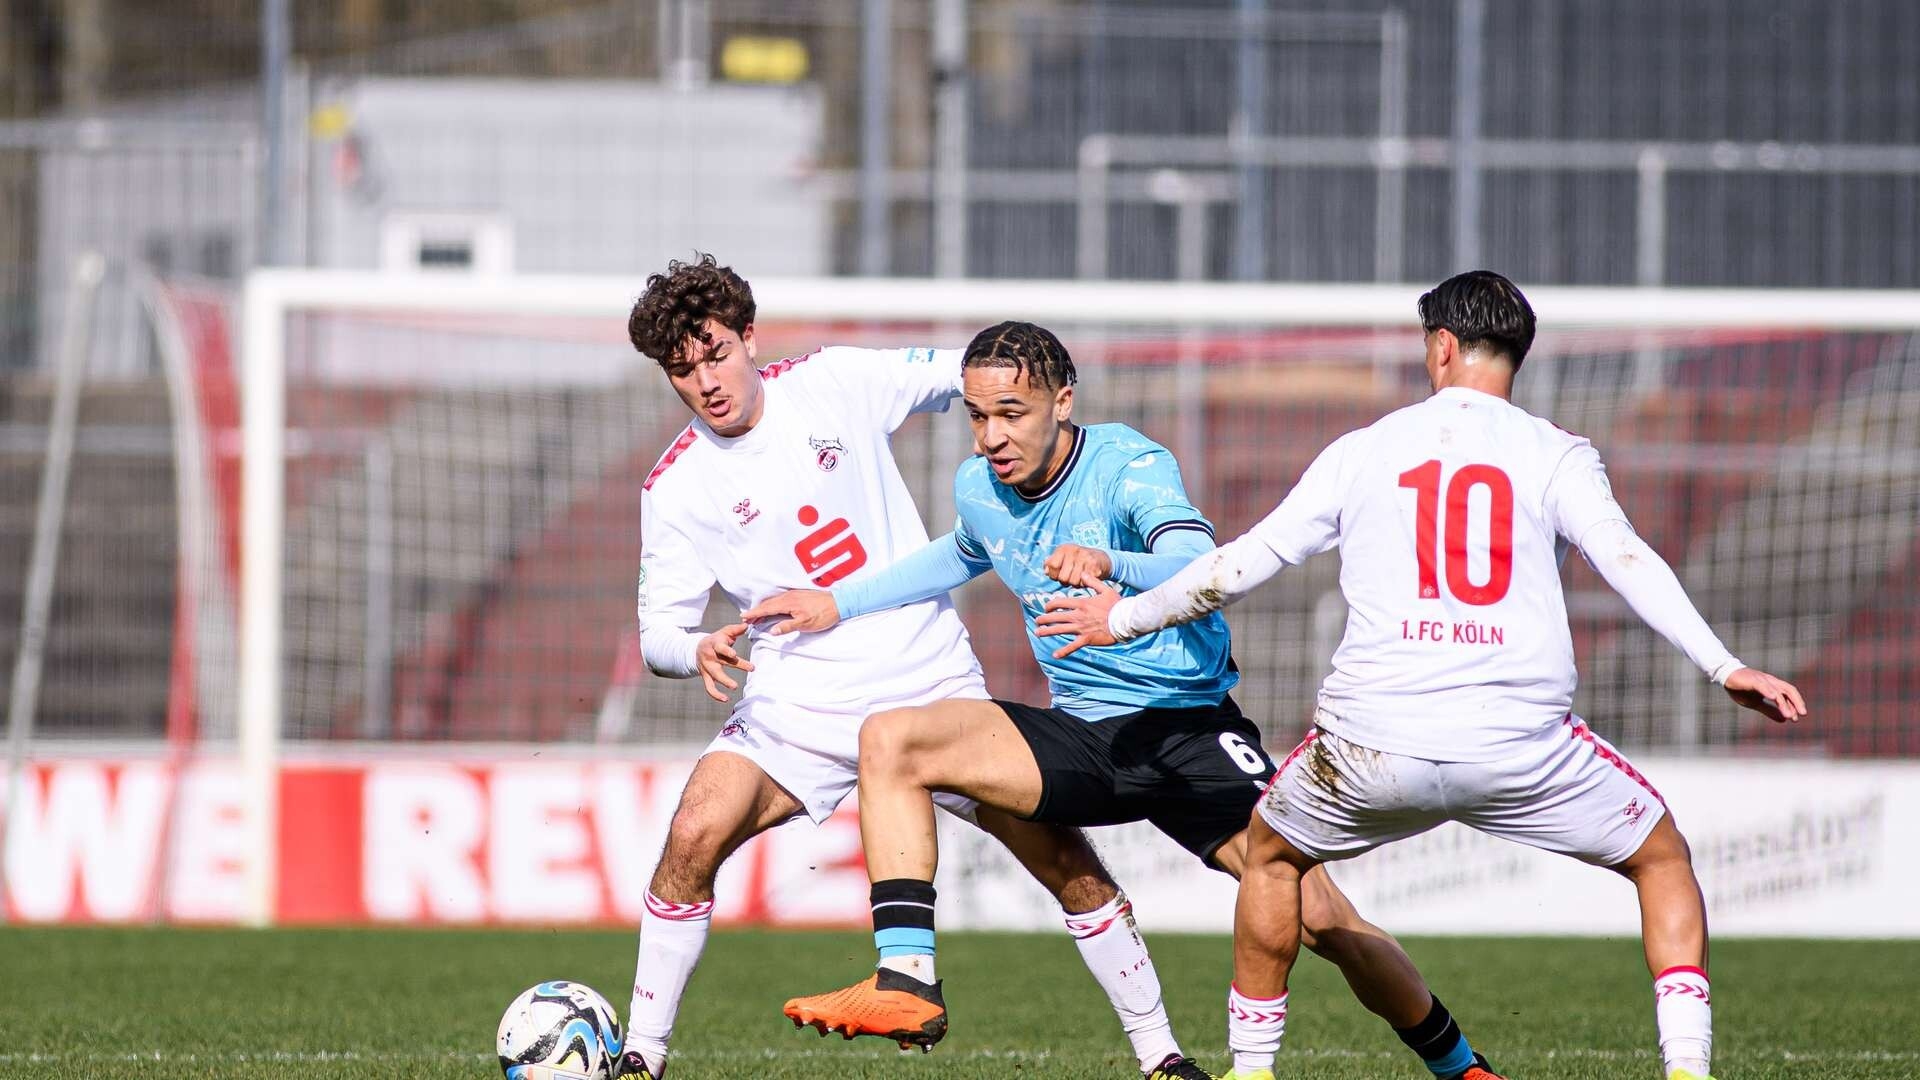 U19 gewinnt Derby dank starker zweiter Halbzeit | 18. Spieltag